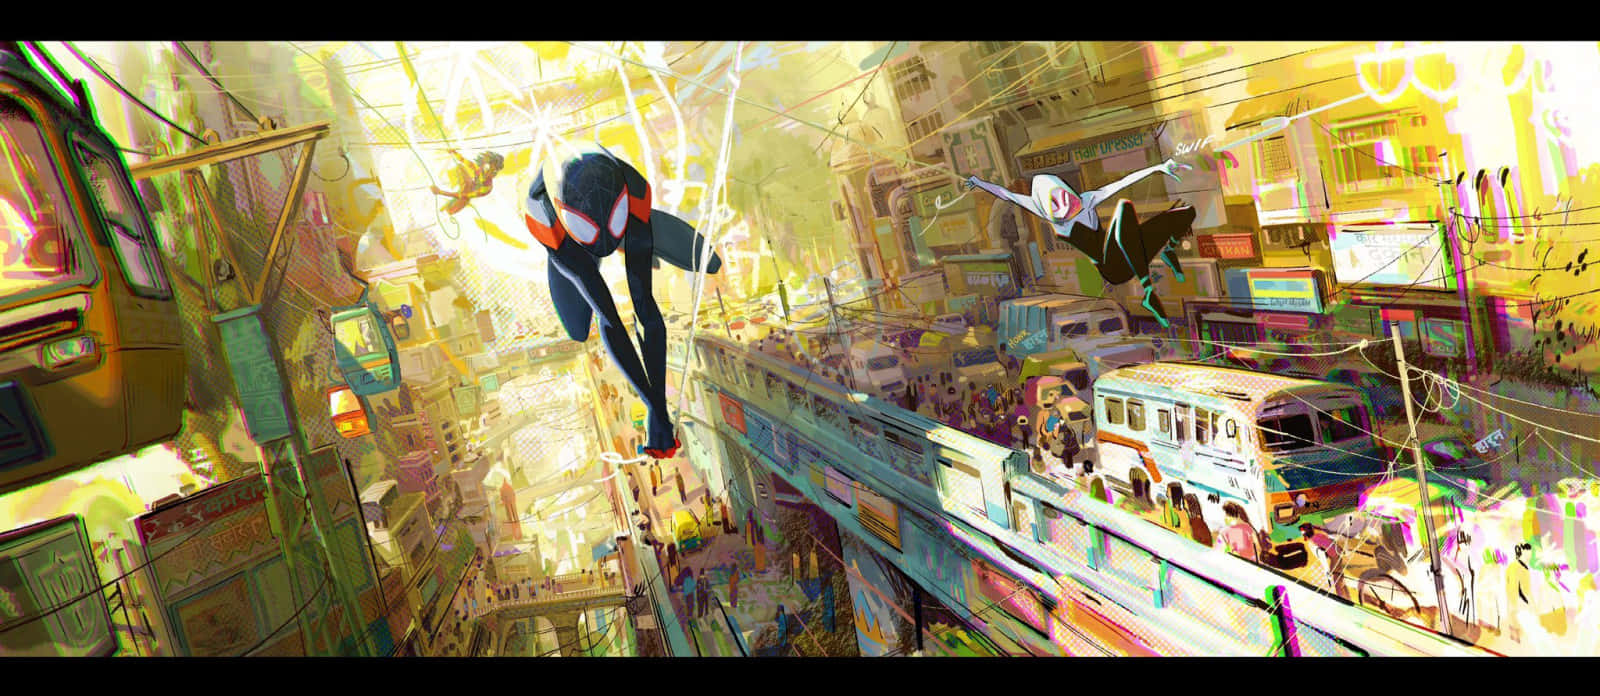 Milesand Gwen Swinging Through City Wallpaper